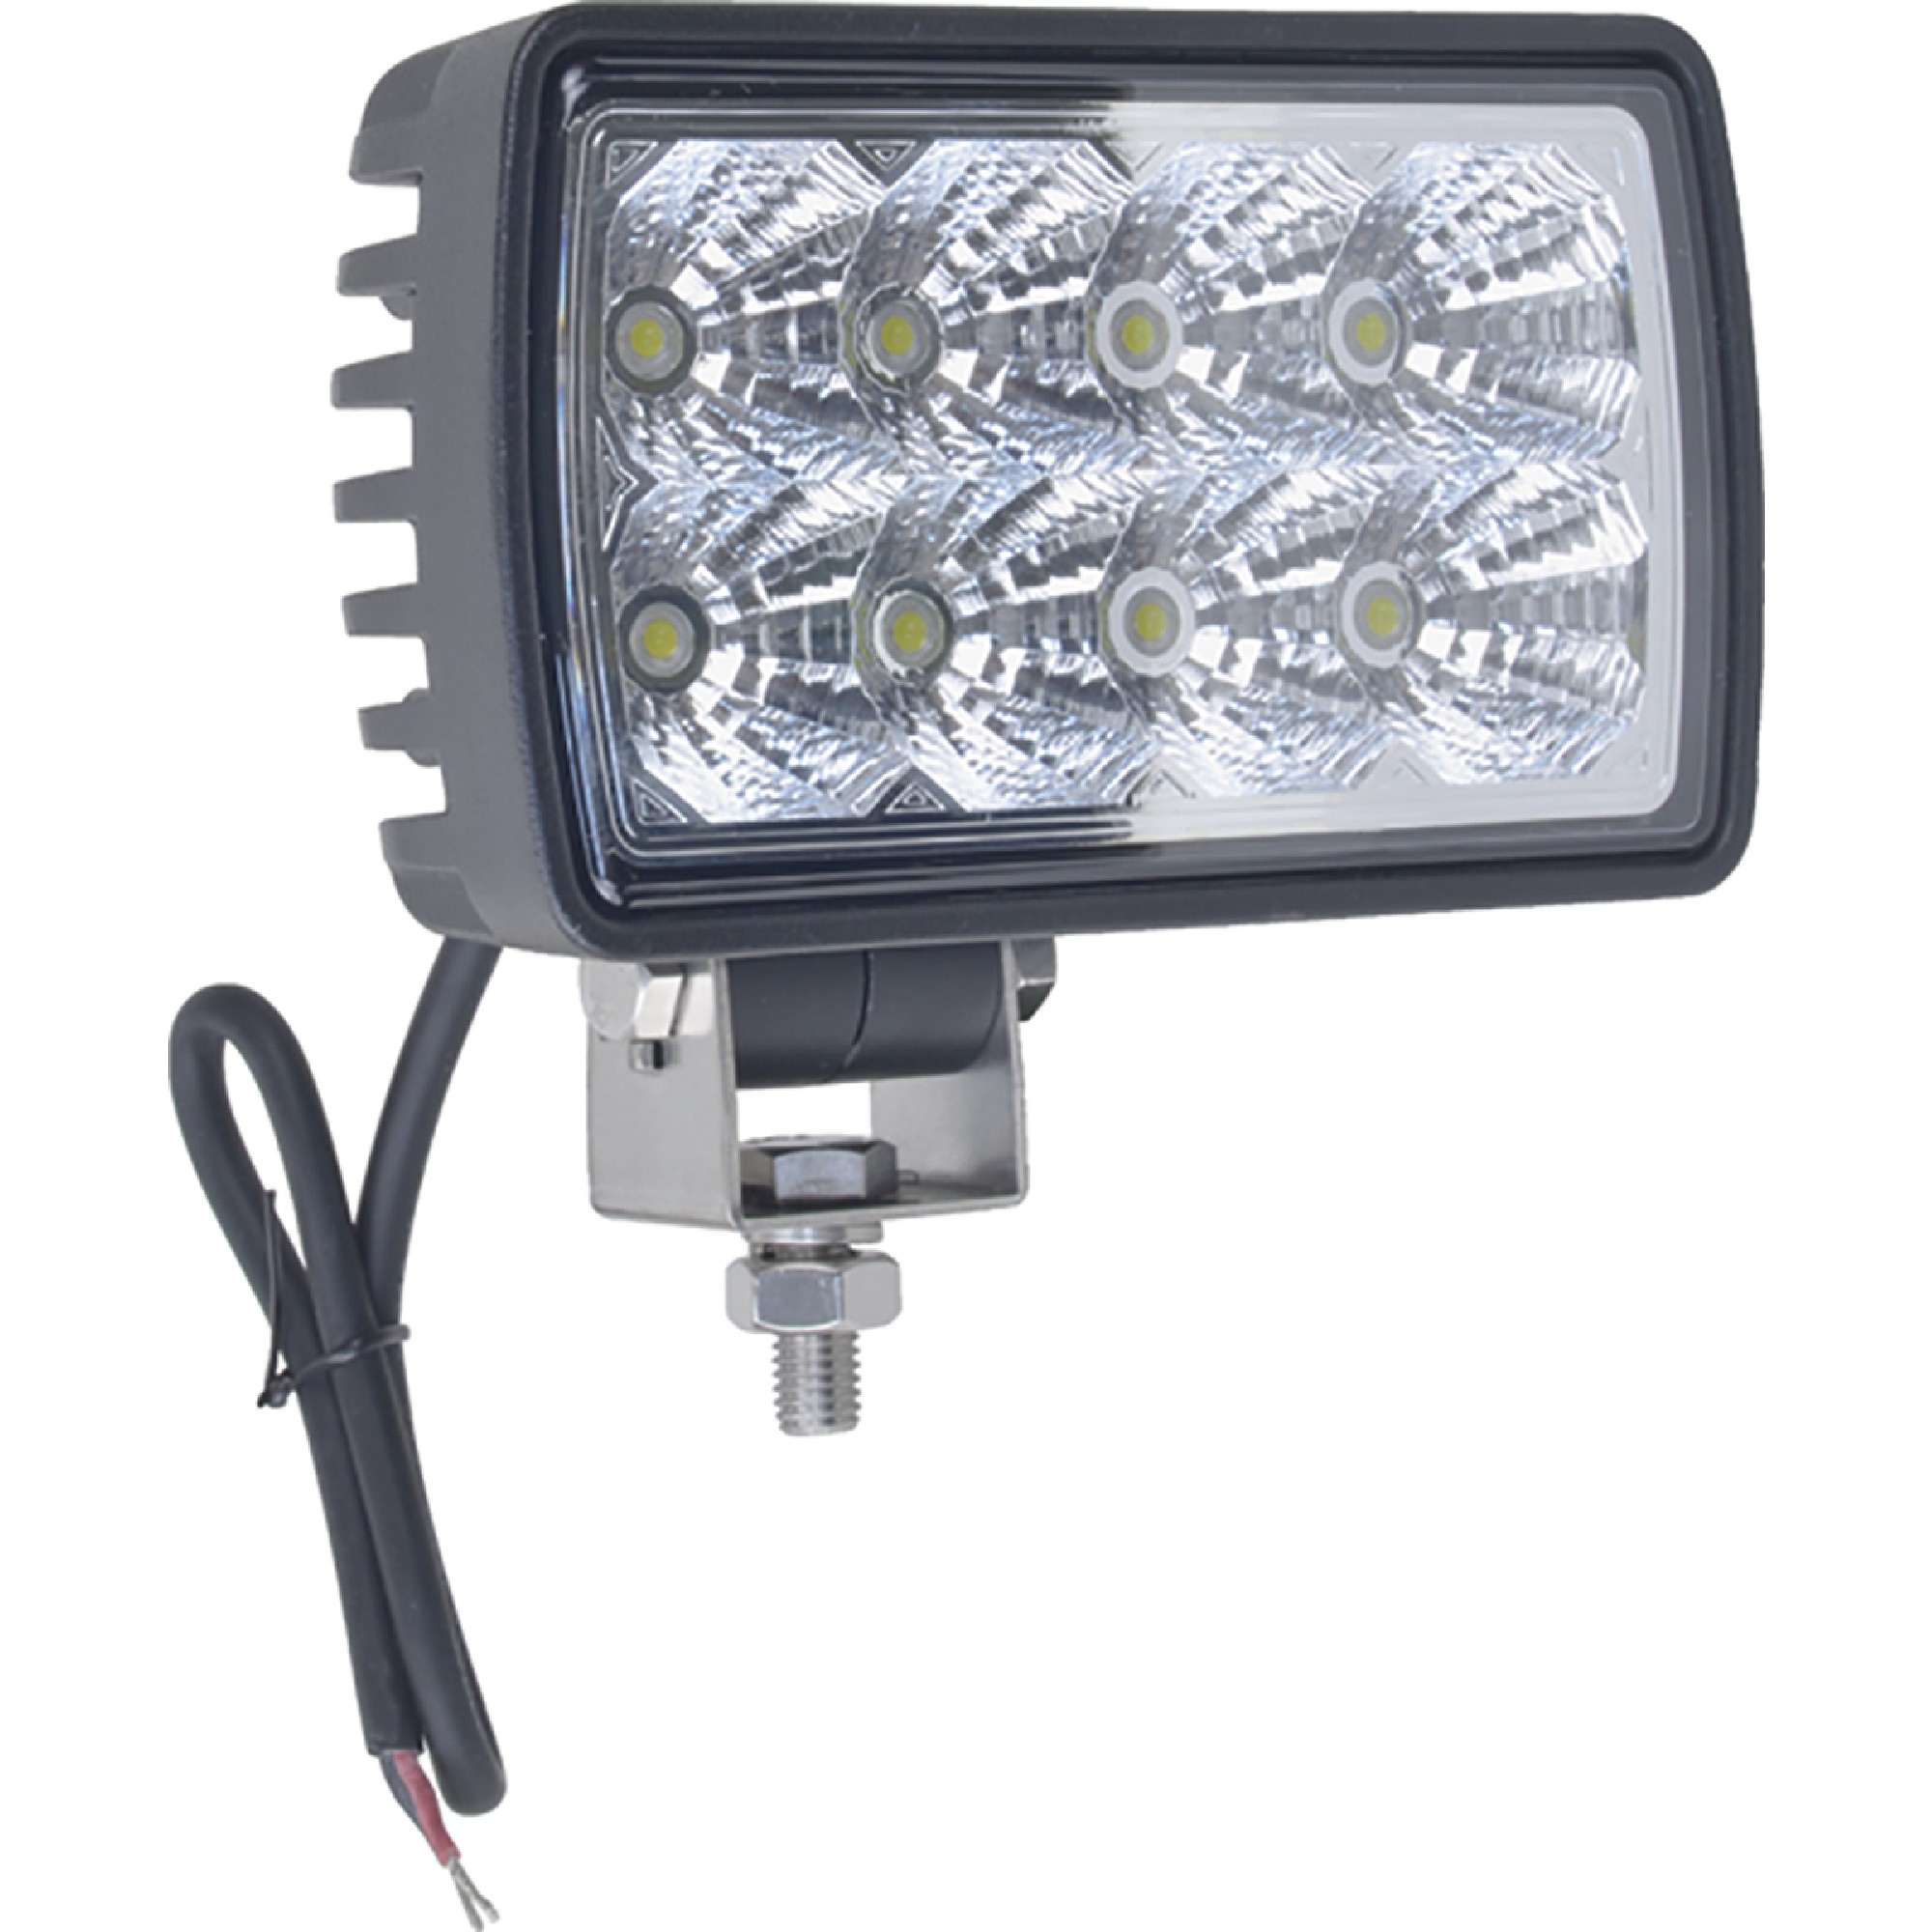 J&N Work Light for 12/24V, 8 LED, 1, 800 Lumens, White, 2" x 5", Spot; 550-10036